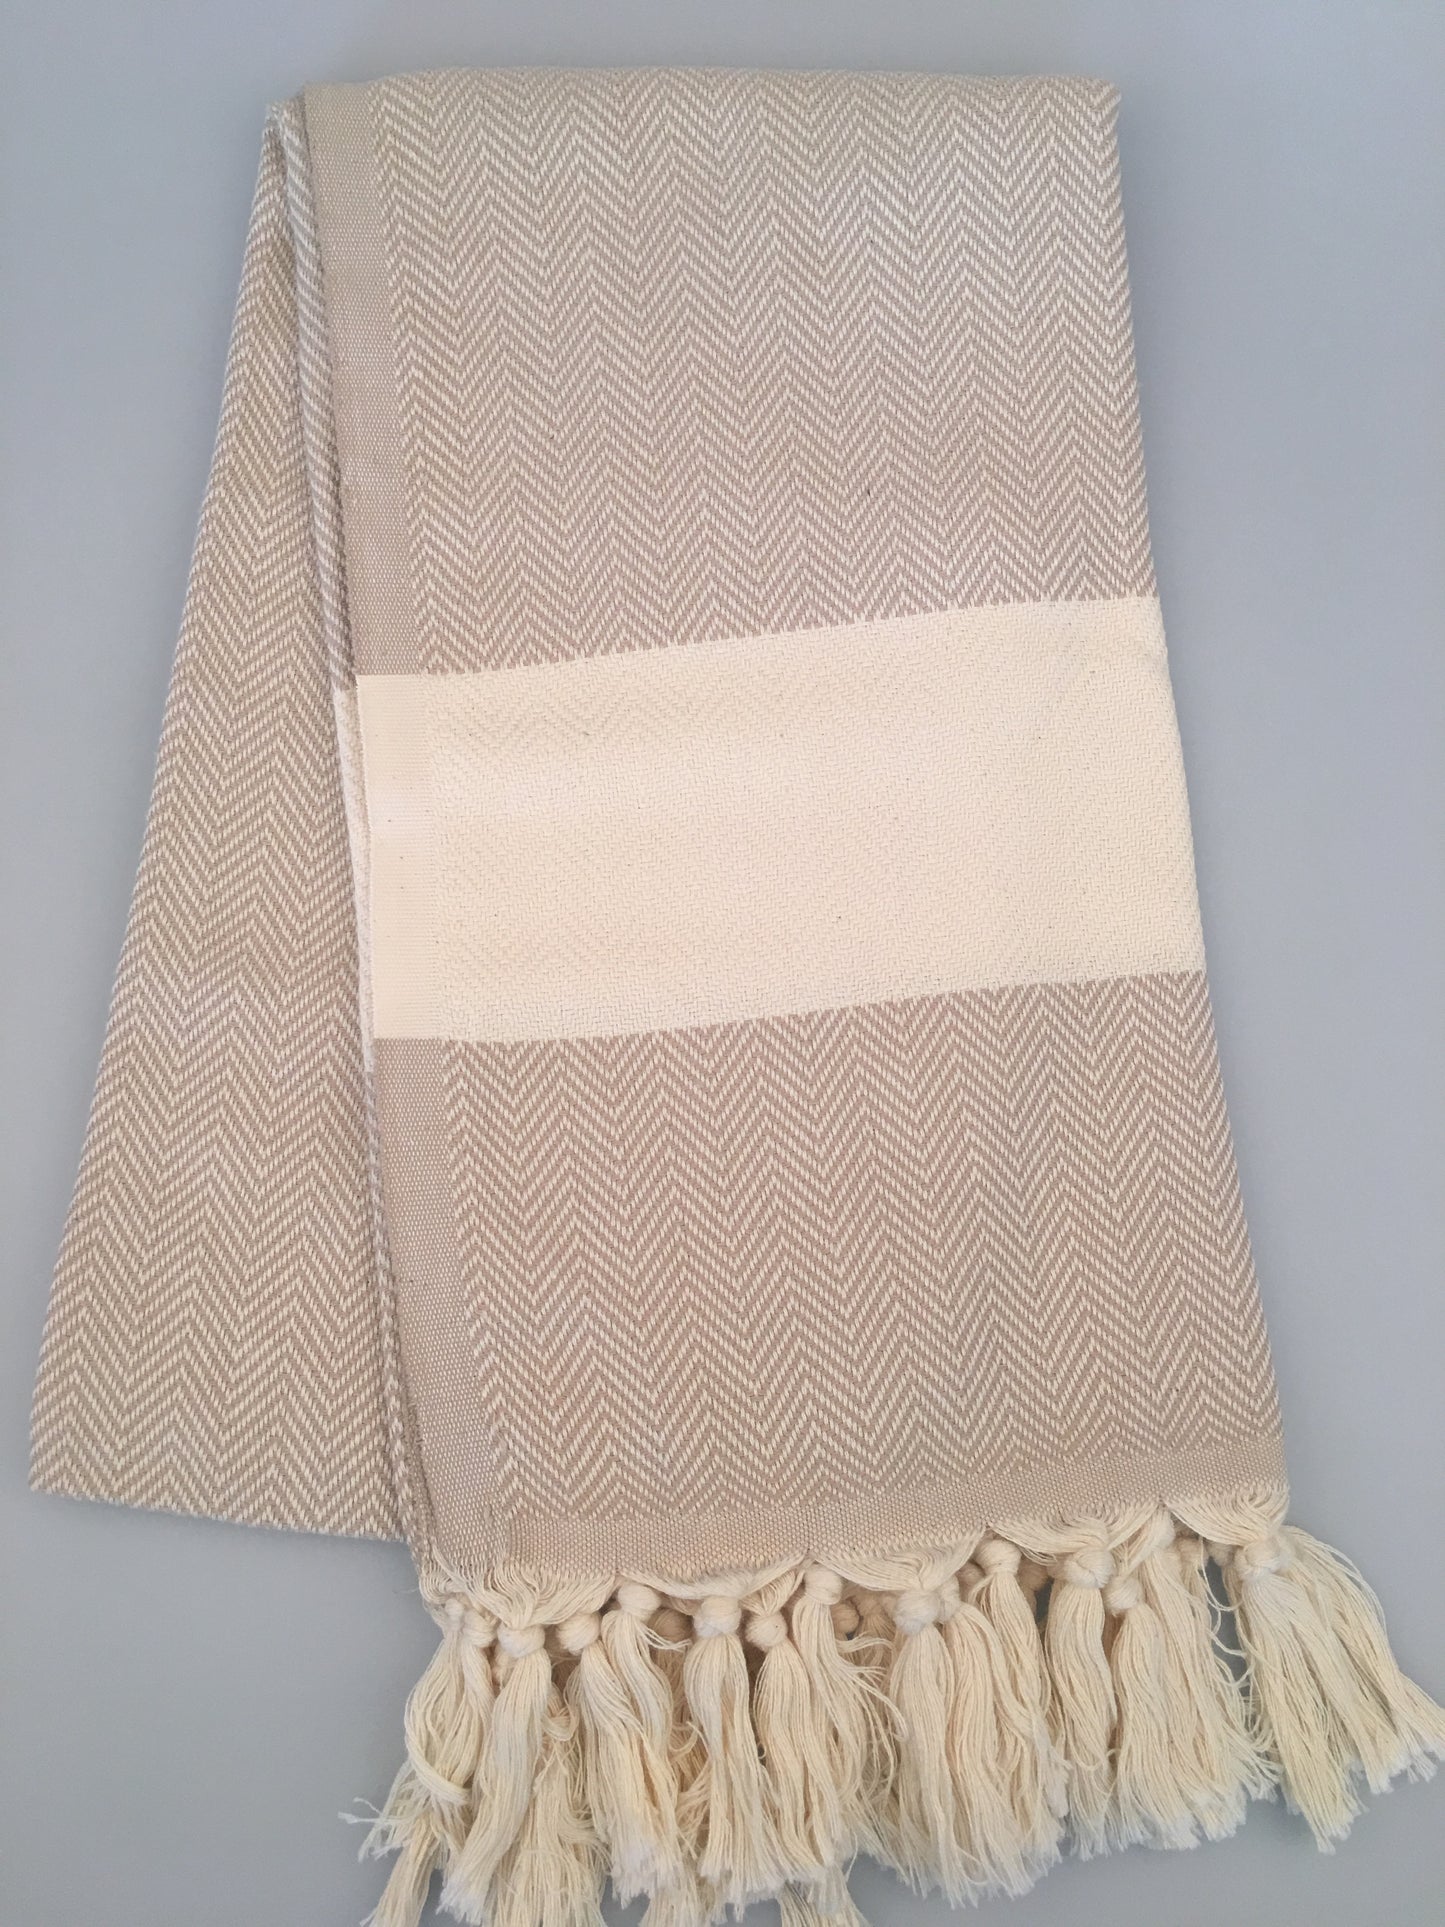 200pcs/LOT Philadelphia Turkish Towel Peshtemal (430g) - Wholesale Price